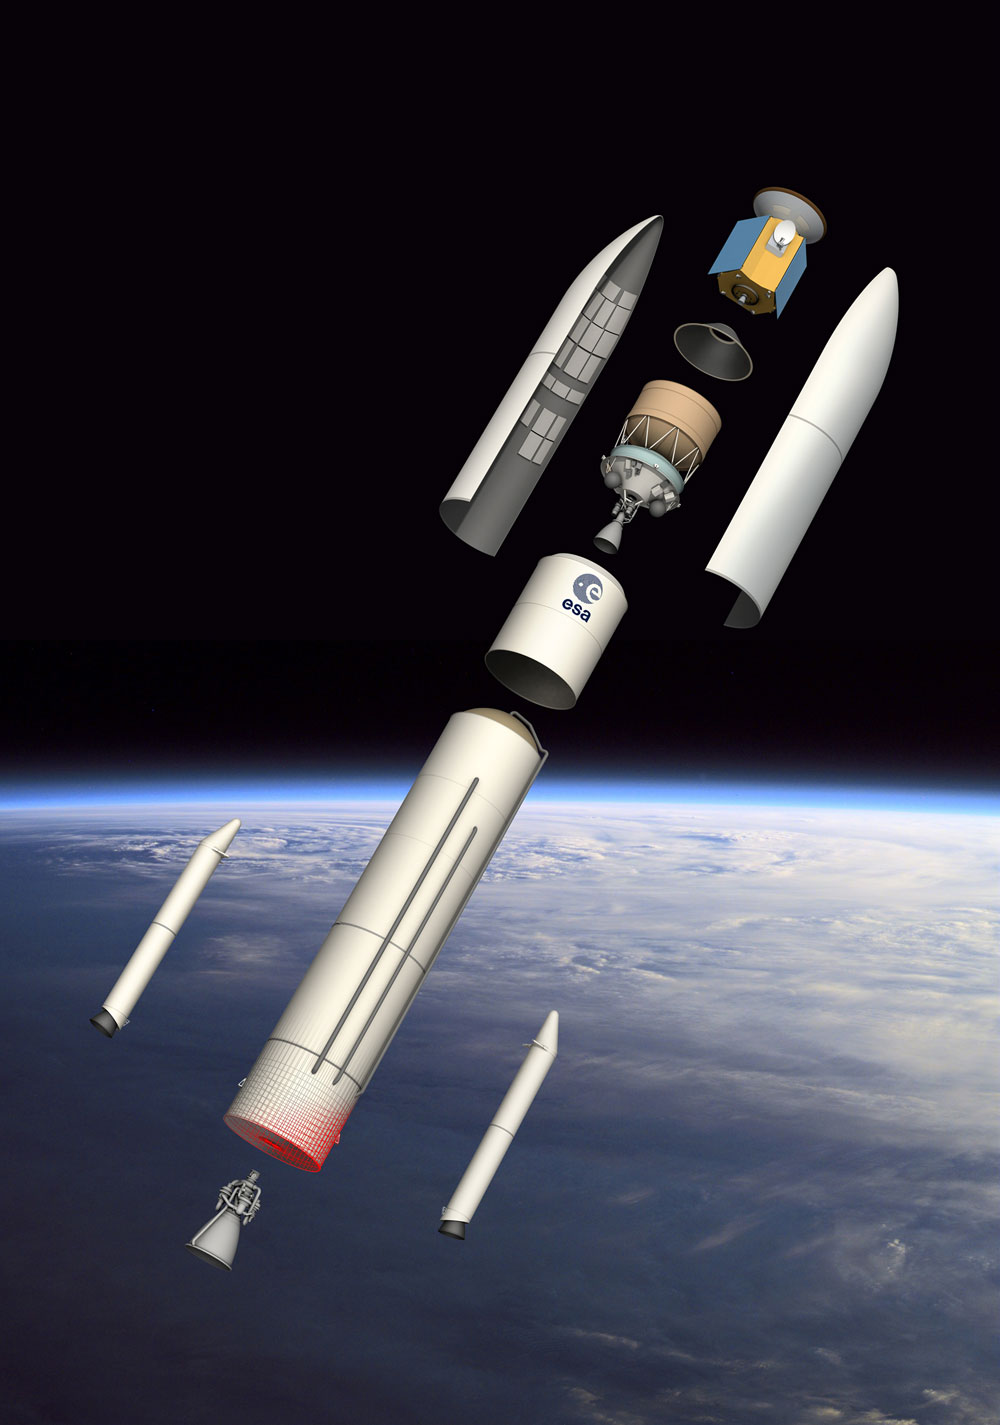 Quelle que soit la configuration de la future Ariane 6, ce lanceur devra être économique pour s'aligner autant que faire se peut sur la stratégie commerciale de SpaceX. Une stratégie toute simple mais redoutable sur un marché fortement concurrentiel qui consiste à s’appuyer sur les contrats élevés du gouvernement des États-Unis (Nasa, US Air Force) pour proposer des lanceurs à des prix anormalement bas, comprendre qui ne reflètent pas les coûts réels du lanceur. © Esa, D. Ducros